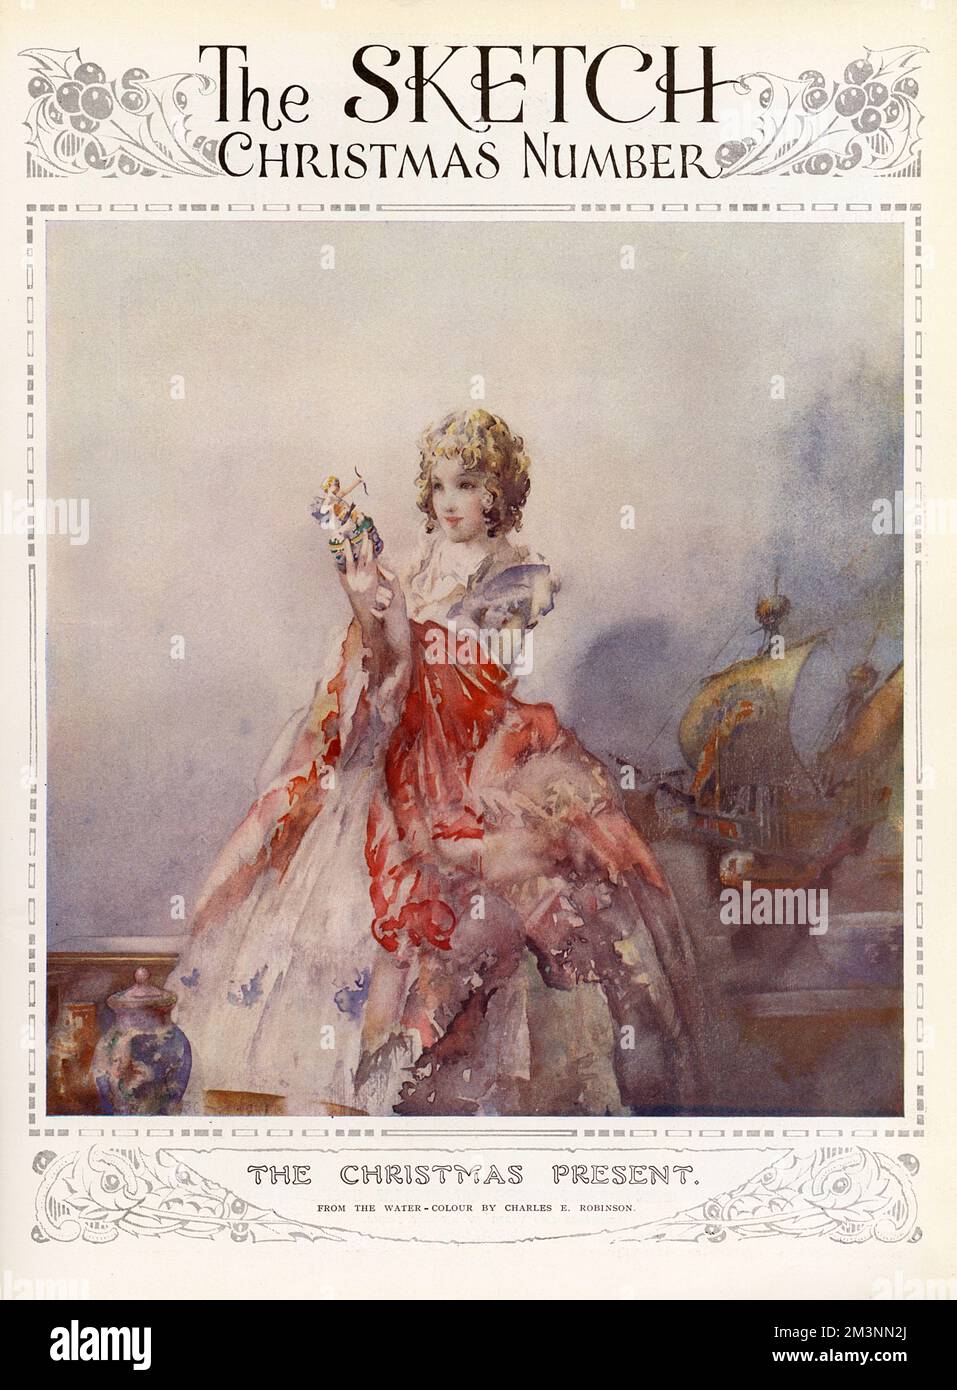 Deuxième couverture du magazine Sketch présentant une illustration par Charles Robinson d'une jeune femme dans une robe du 18th siècle regardant avec émerveillement une figurine. Un navire à l'arrière-plan suggère que ses dons exotiques viennent d'outre-mer. Date: 1934 Banque D'Images